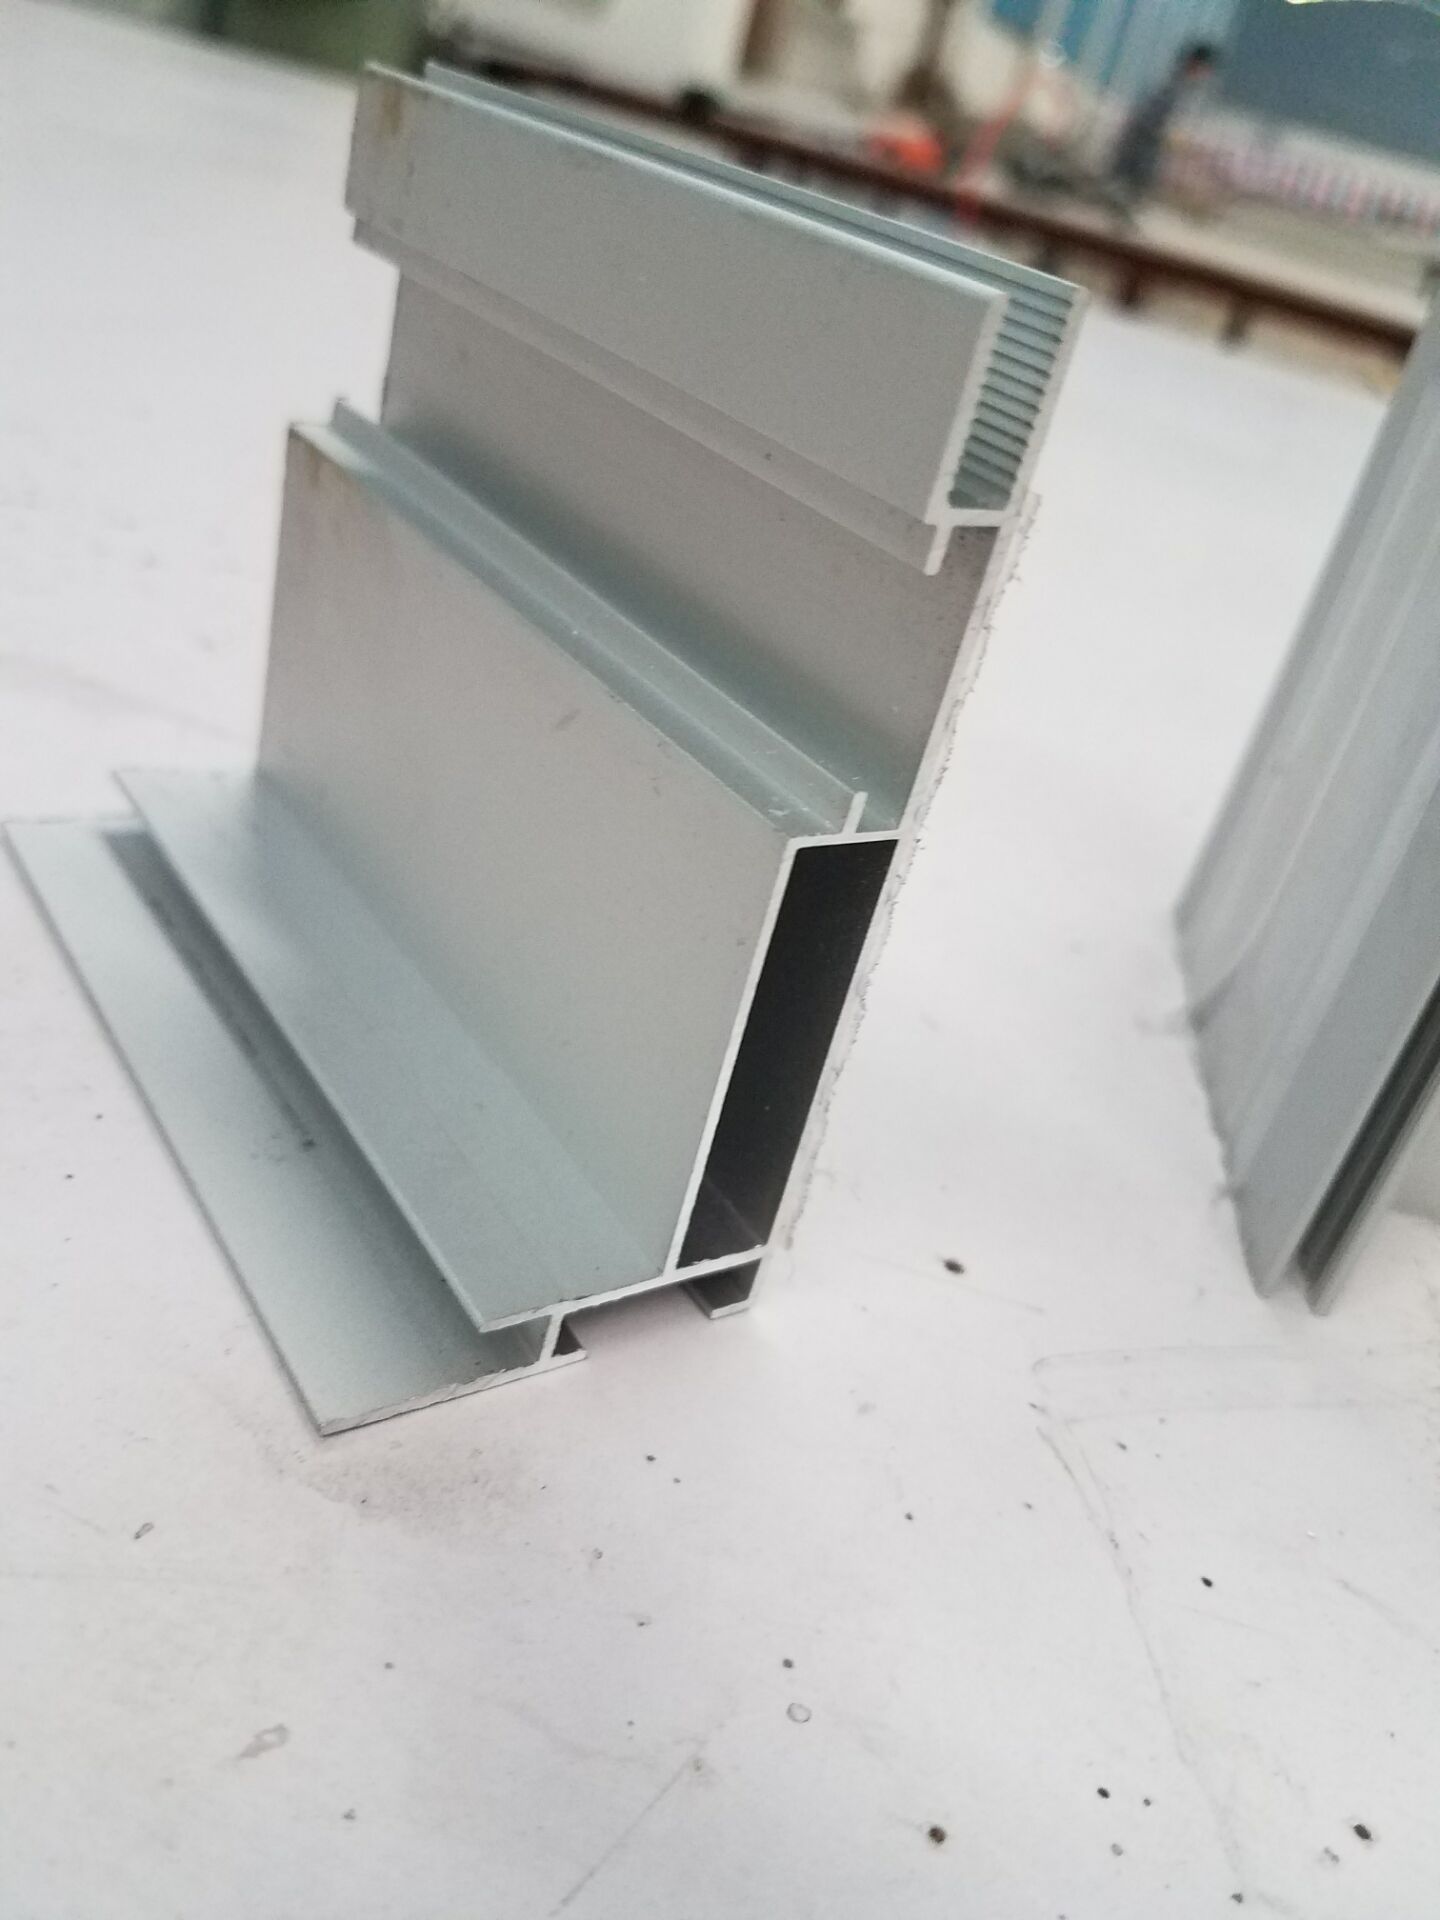 供应江苏地区新型抽插6.0公分铝合金灯箱铝材 颜色多样 尺寸可定制